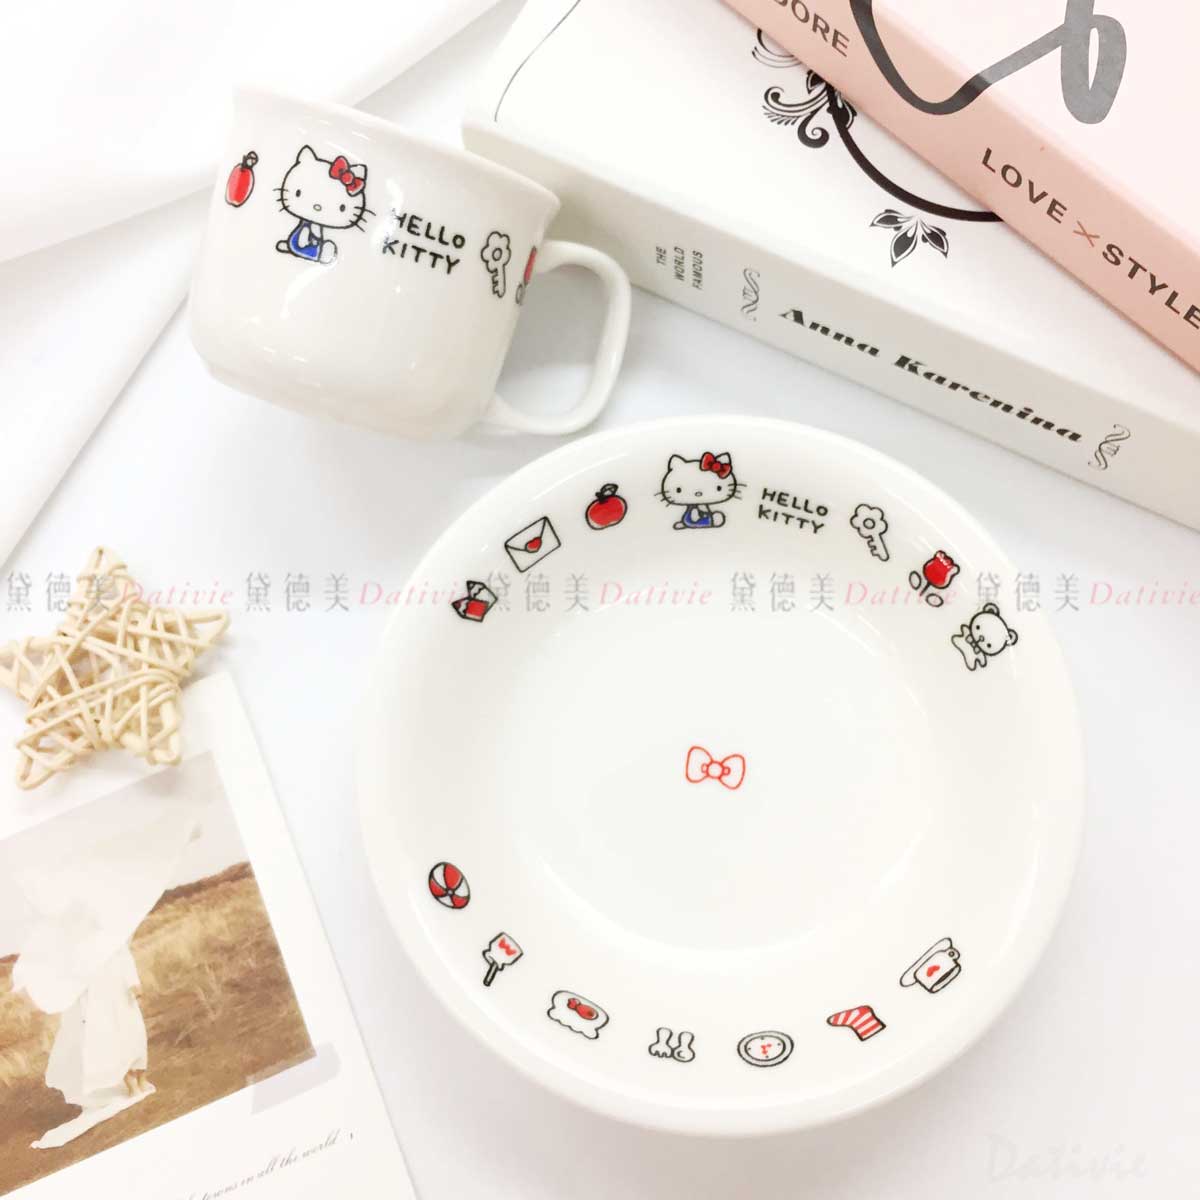 陶瓷餐具系列 馬克杯 點心盤-凱蒂貓 三麗鷗 HELLO KITTY 日本進口正版授權